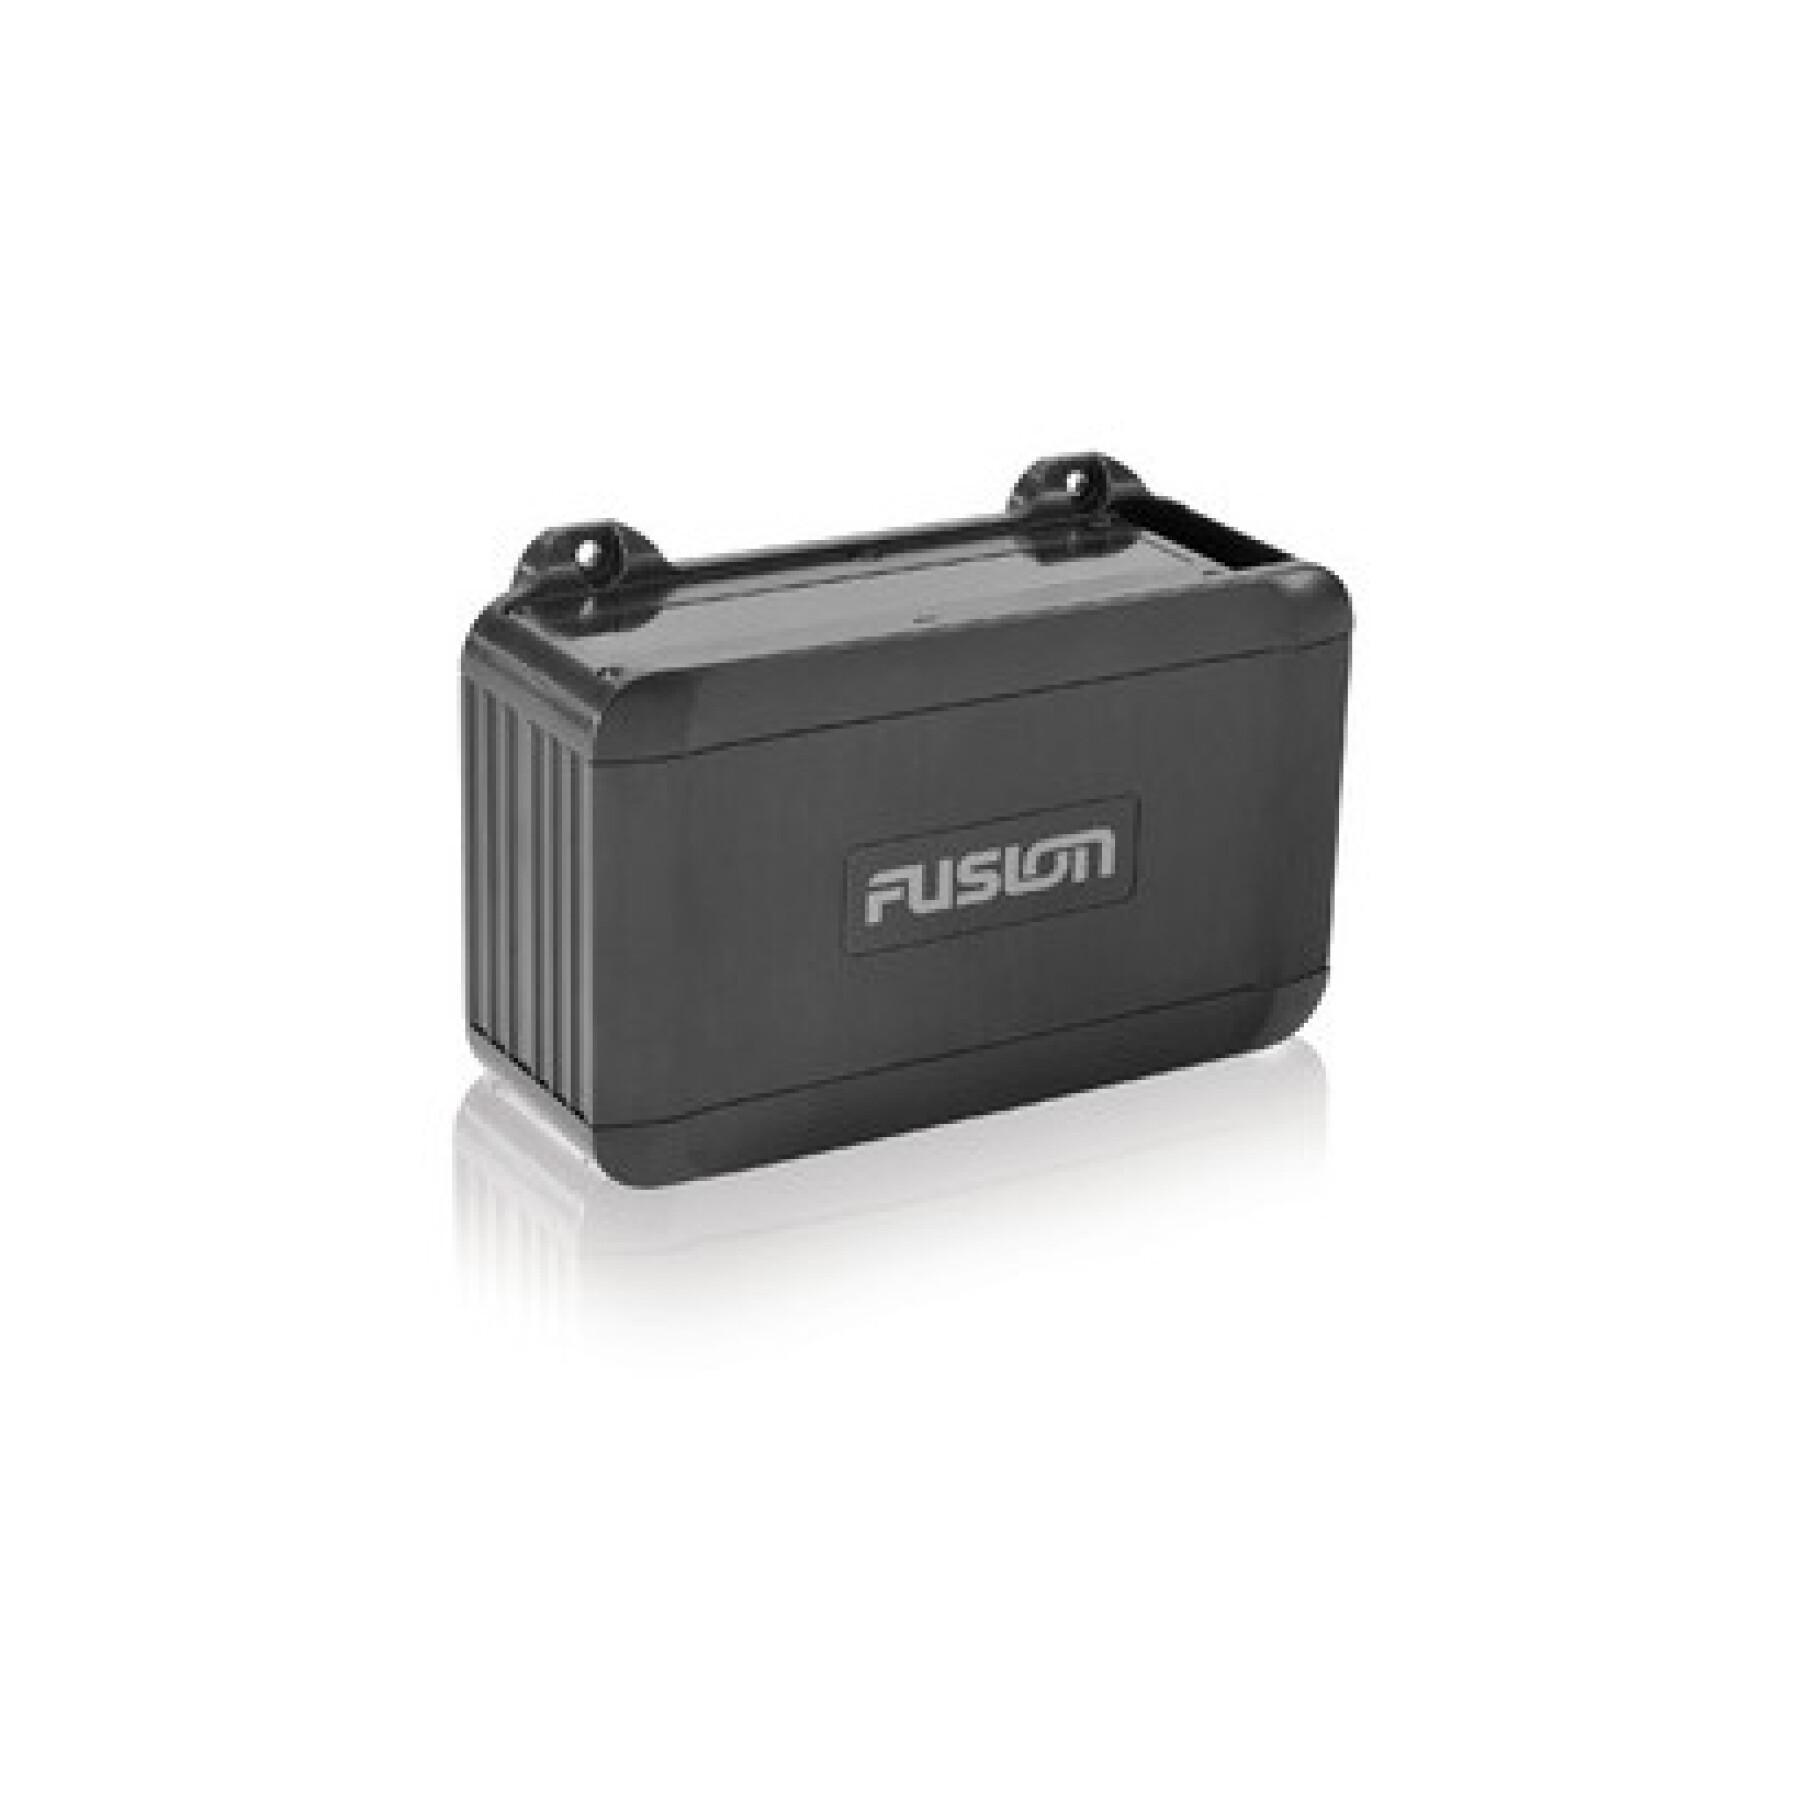 Marifoon met audiosysteem en afstandsbediening Fusion BB 100